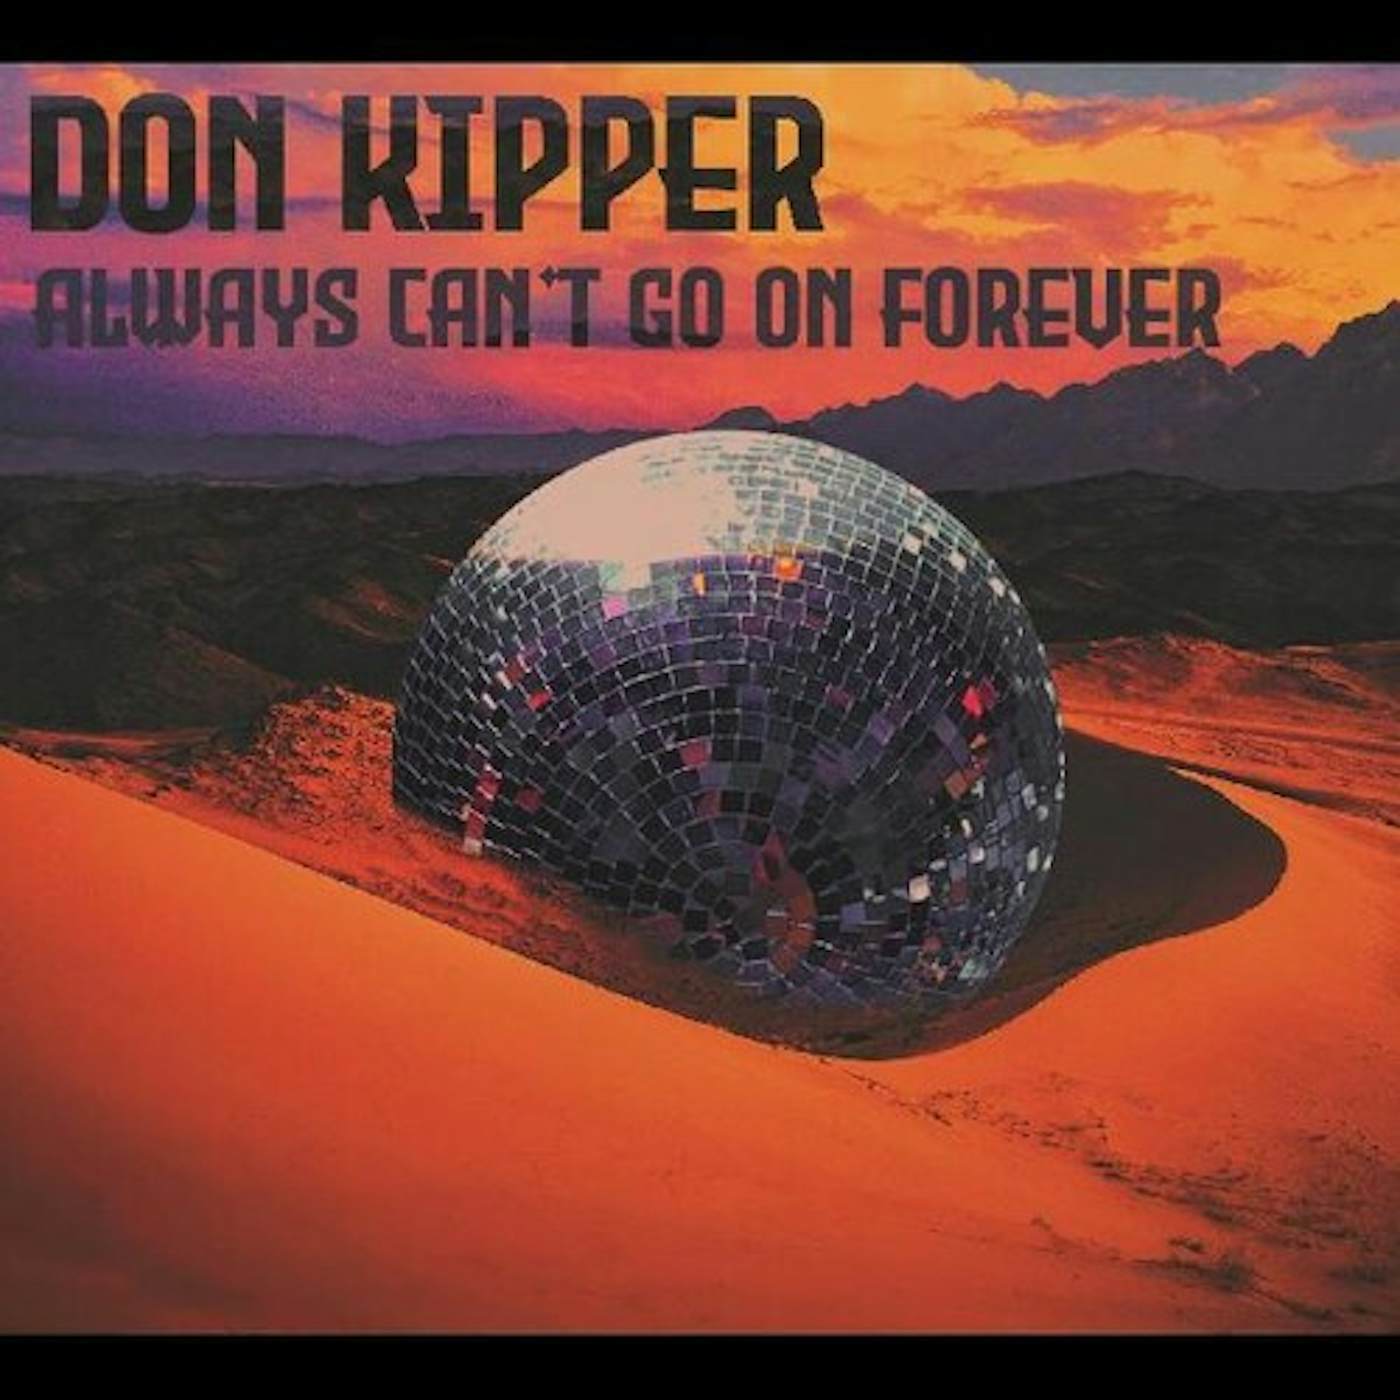 Don Kipper ALWAYS CAN'T GO ON FOREVER CD